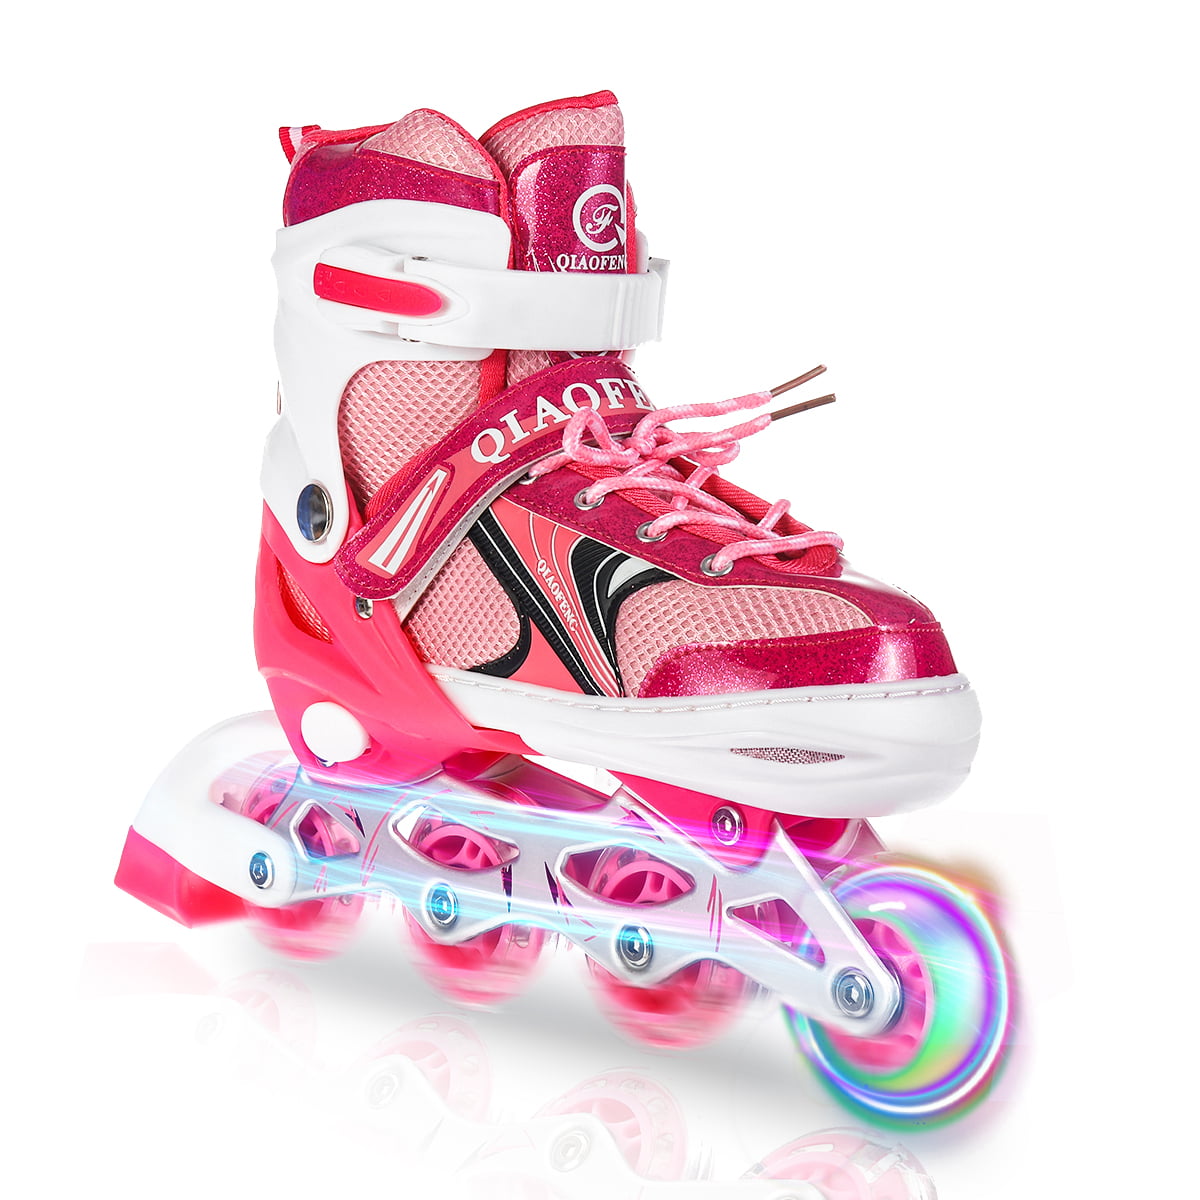 Details about   Adjustable Inline Skates Roller Blades Adult Size 8-10.5 Breathable Adult E 49 